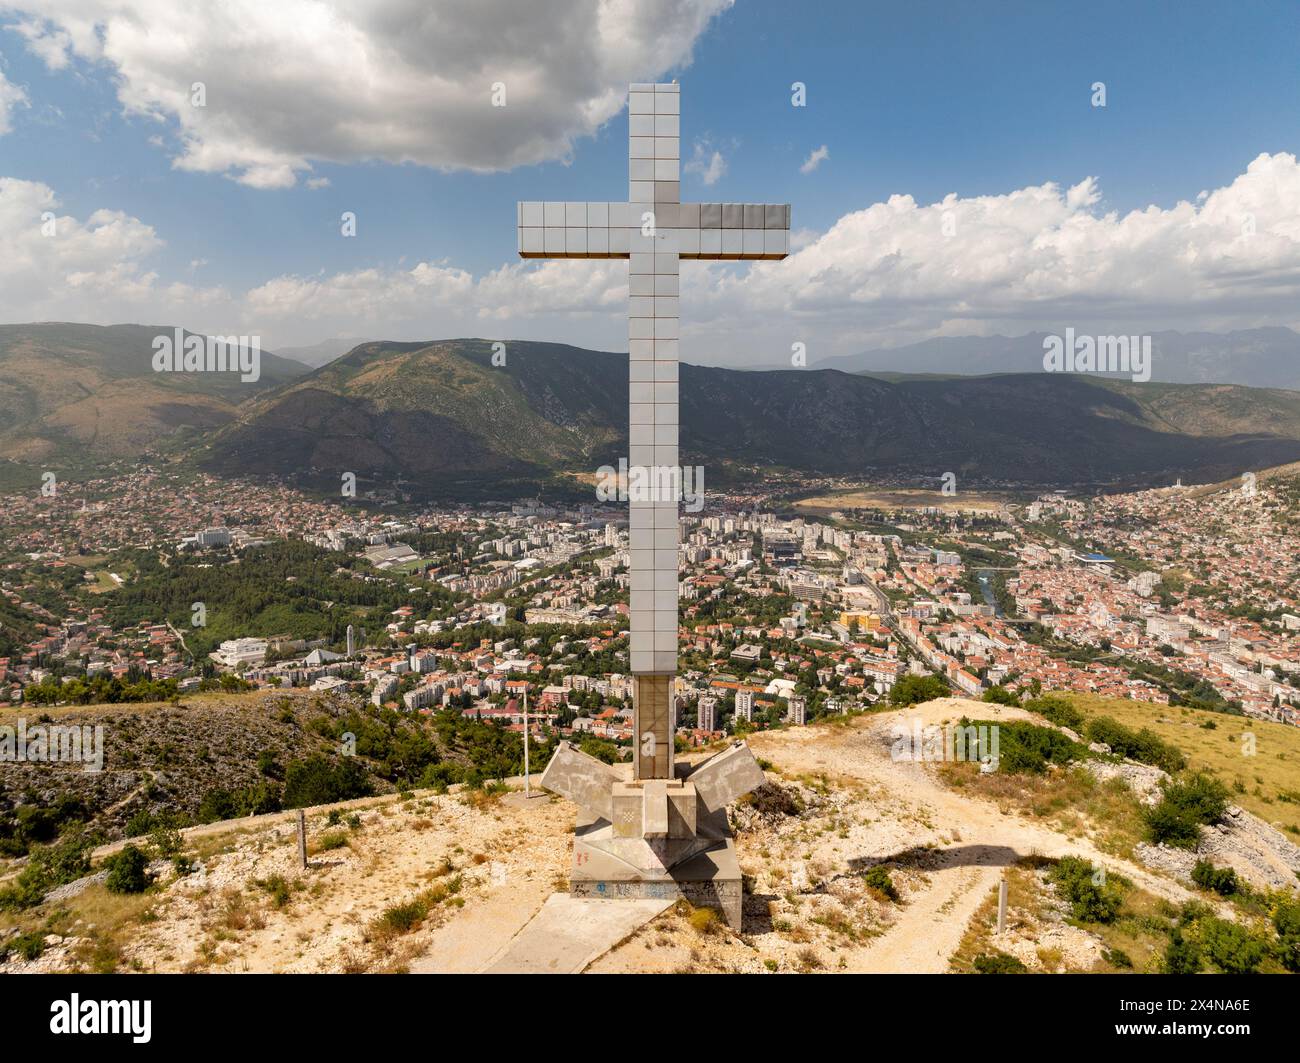 Millennium Cross, 33 mètres de haut, construit en 2002 pour représenter 2000 ans de christianisme sur le point culminant de la colline de Hum surplombant l'ancien Banque D'Images